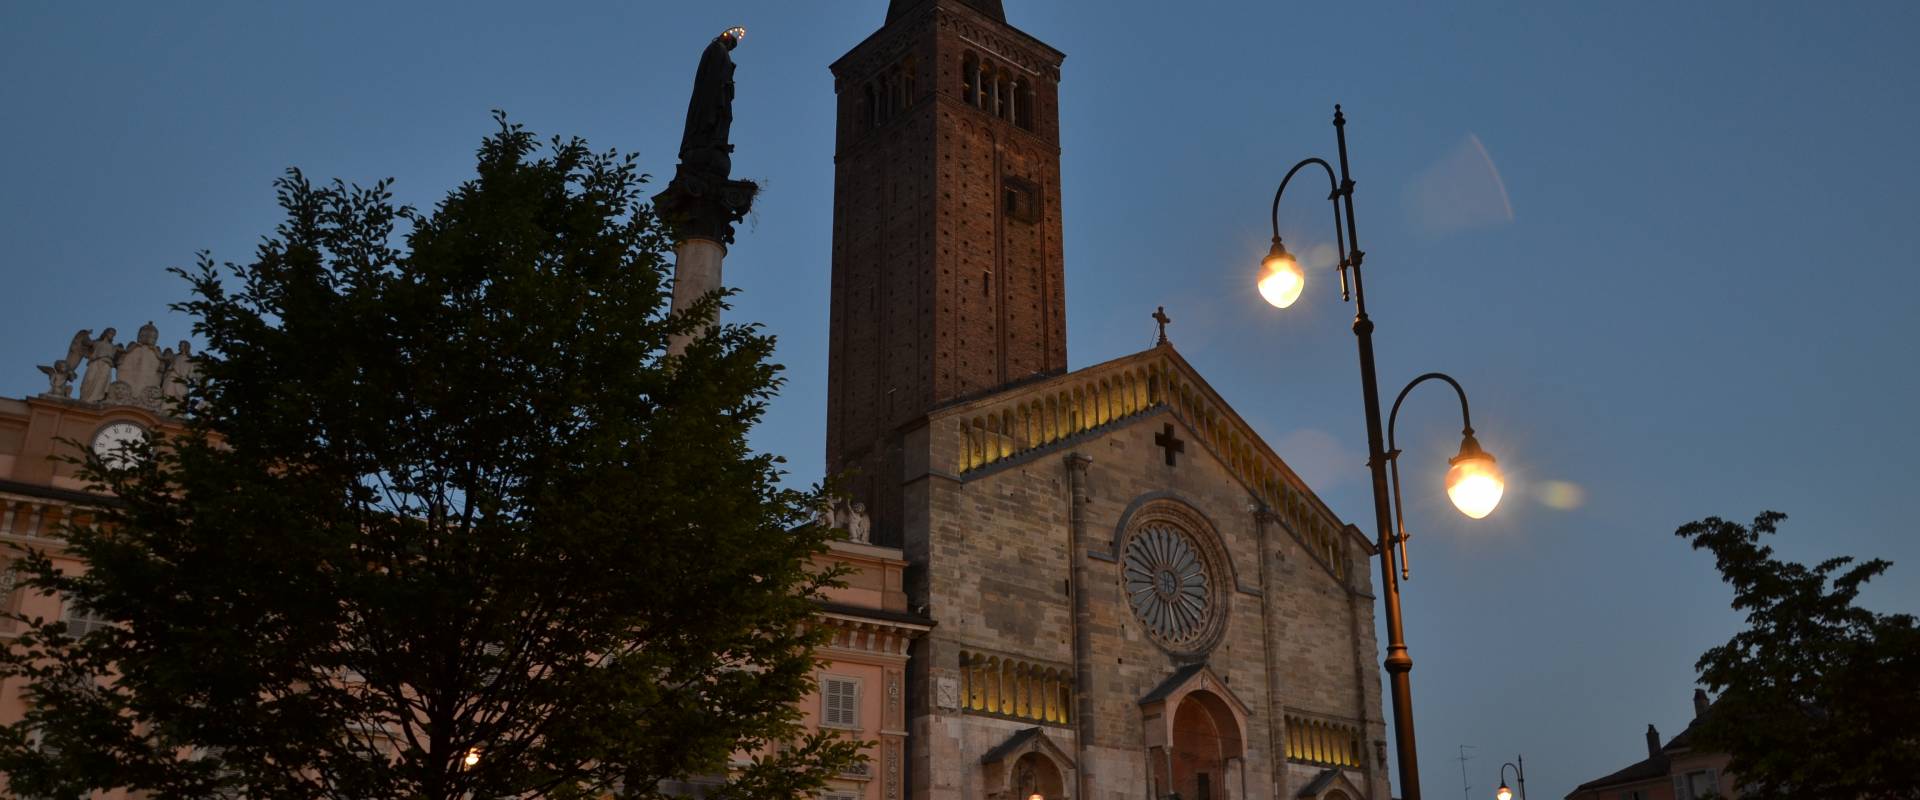 Duomo di Piacenza foto di AF74